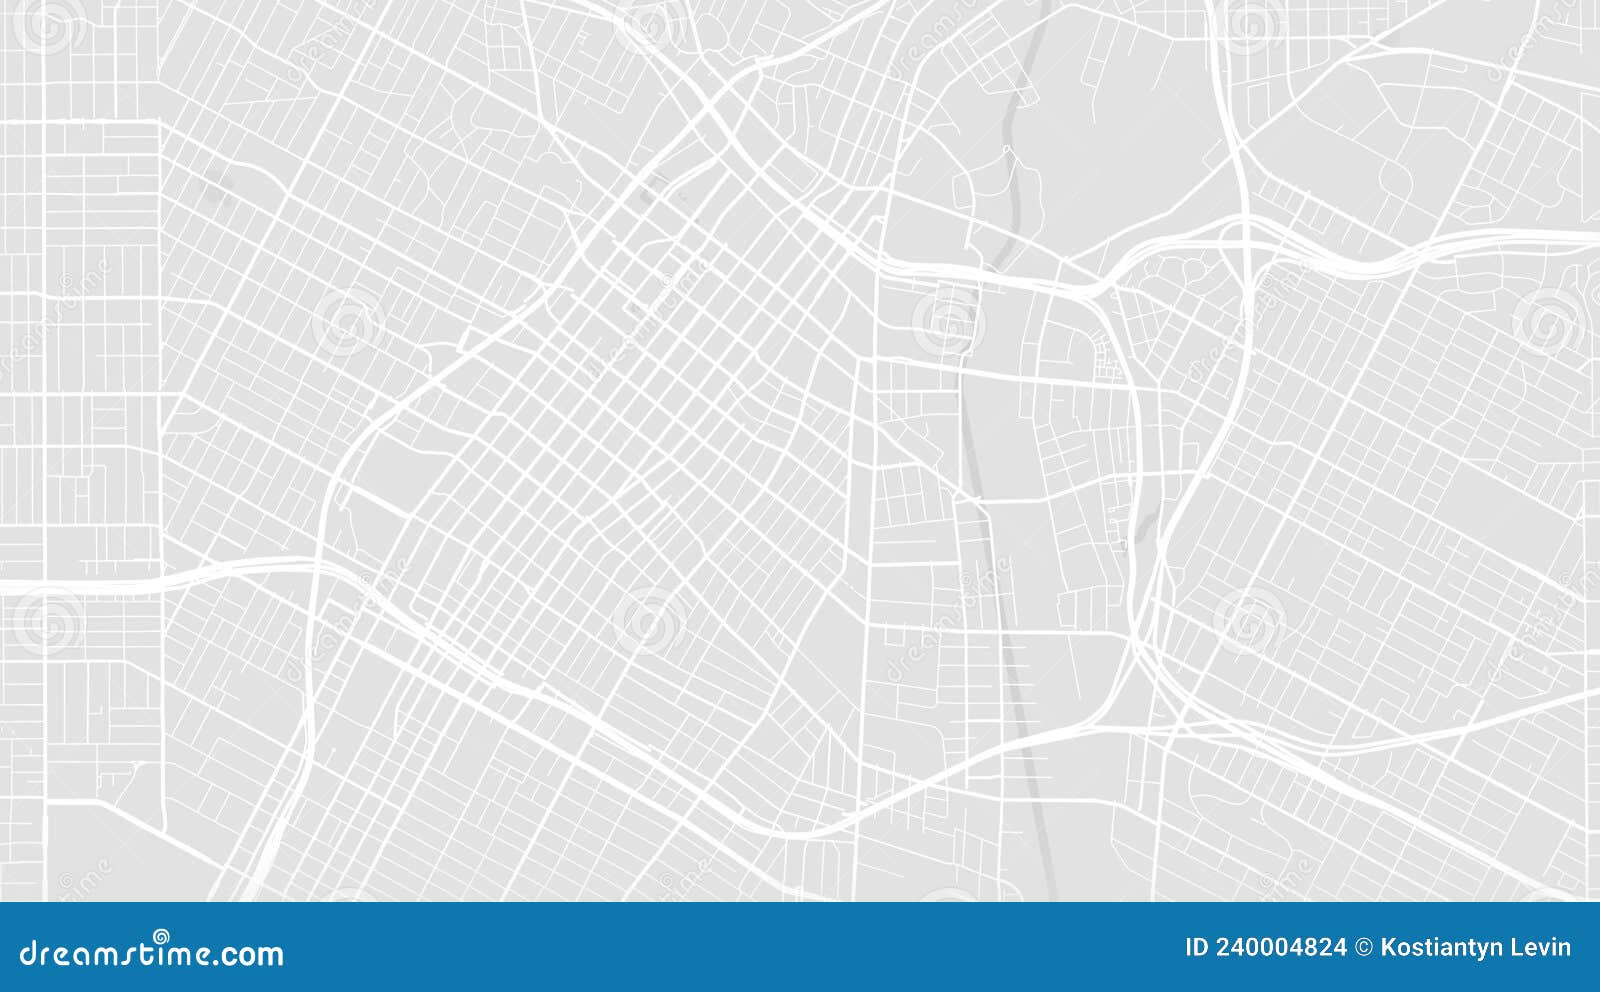 ✨ CONHEÇA O MAPA SUNSET ✨ Mapa em Los Angeles com uma instalação da Ki